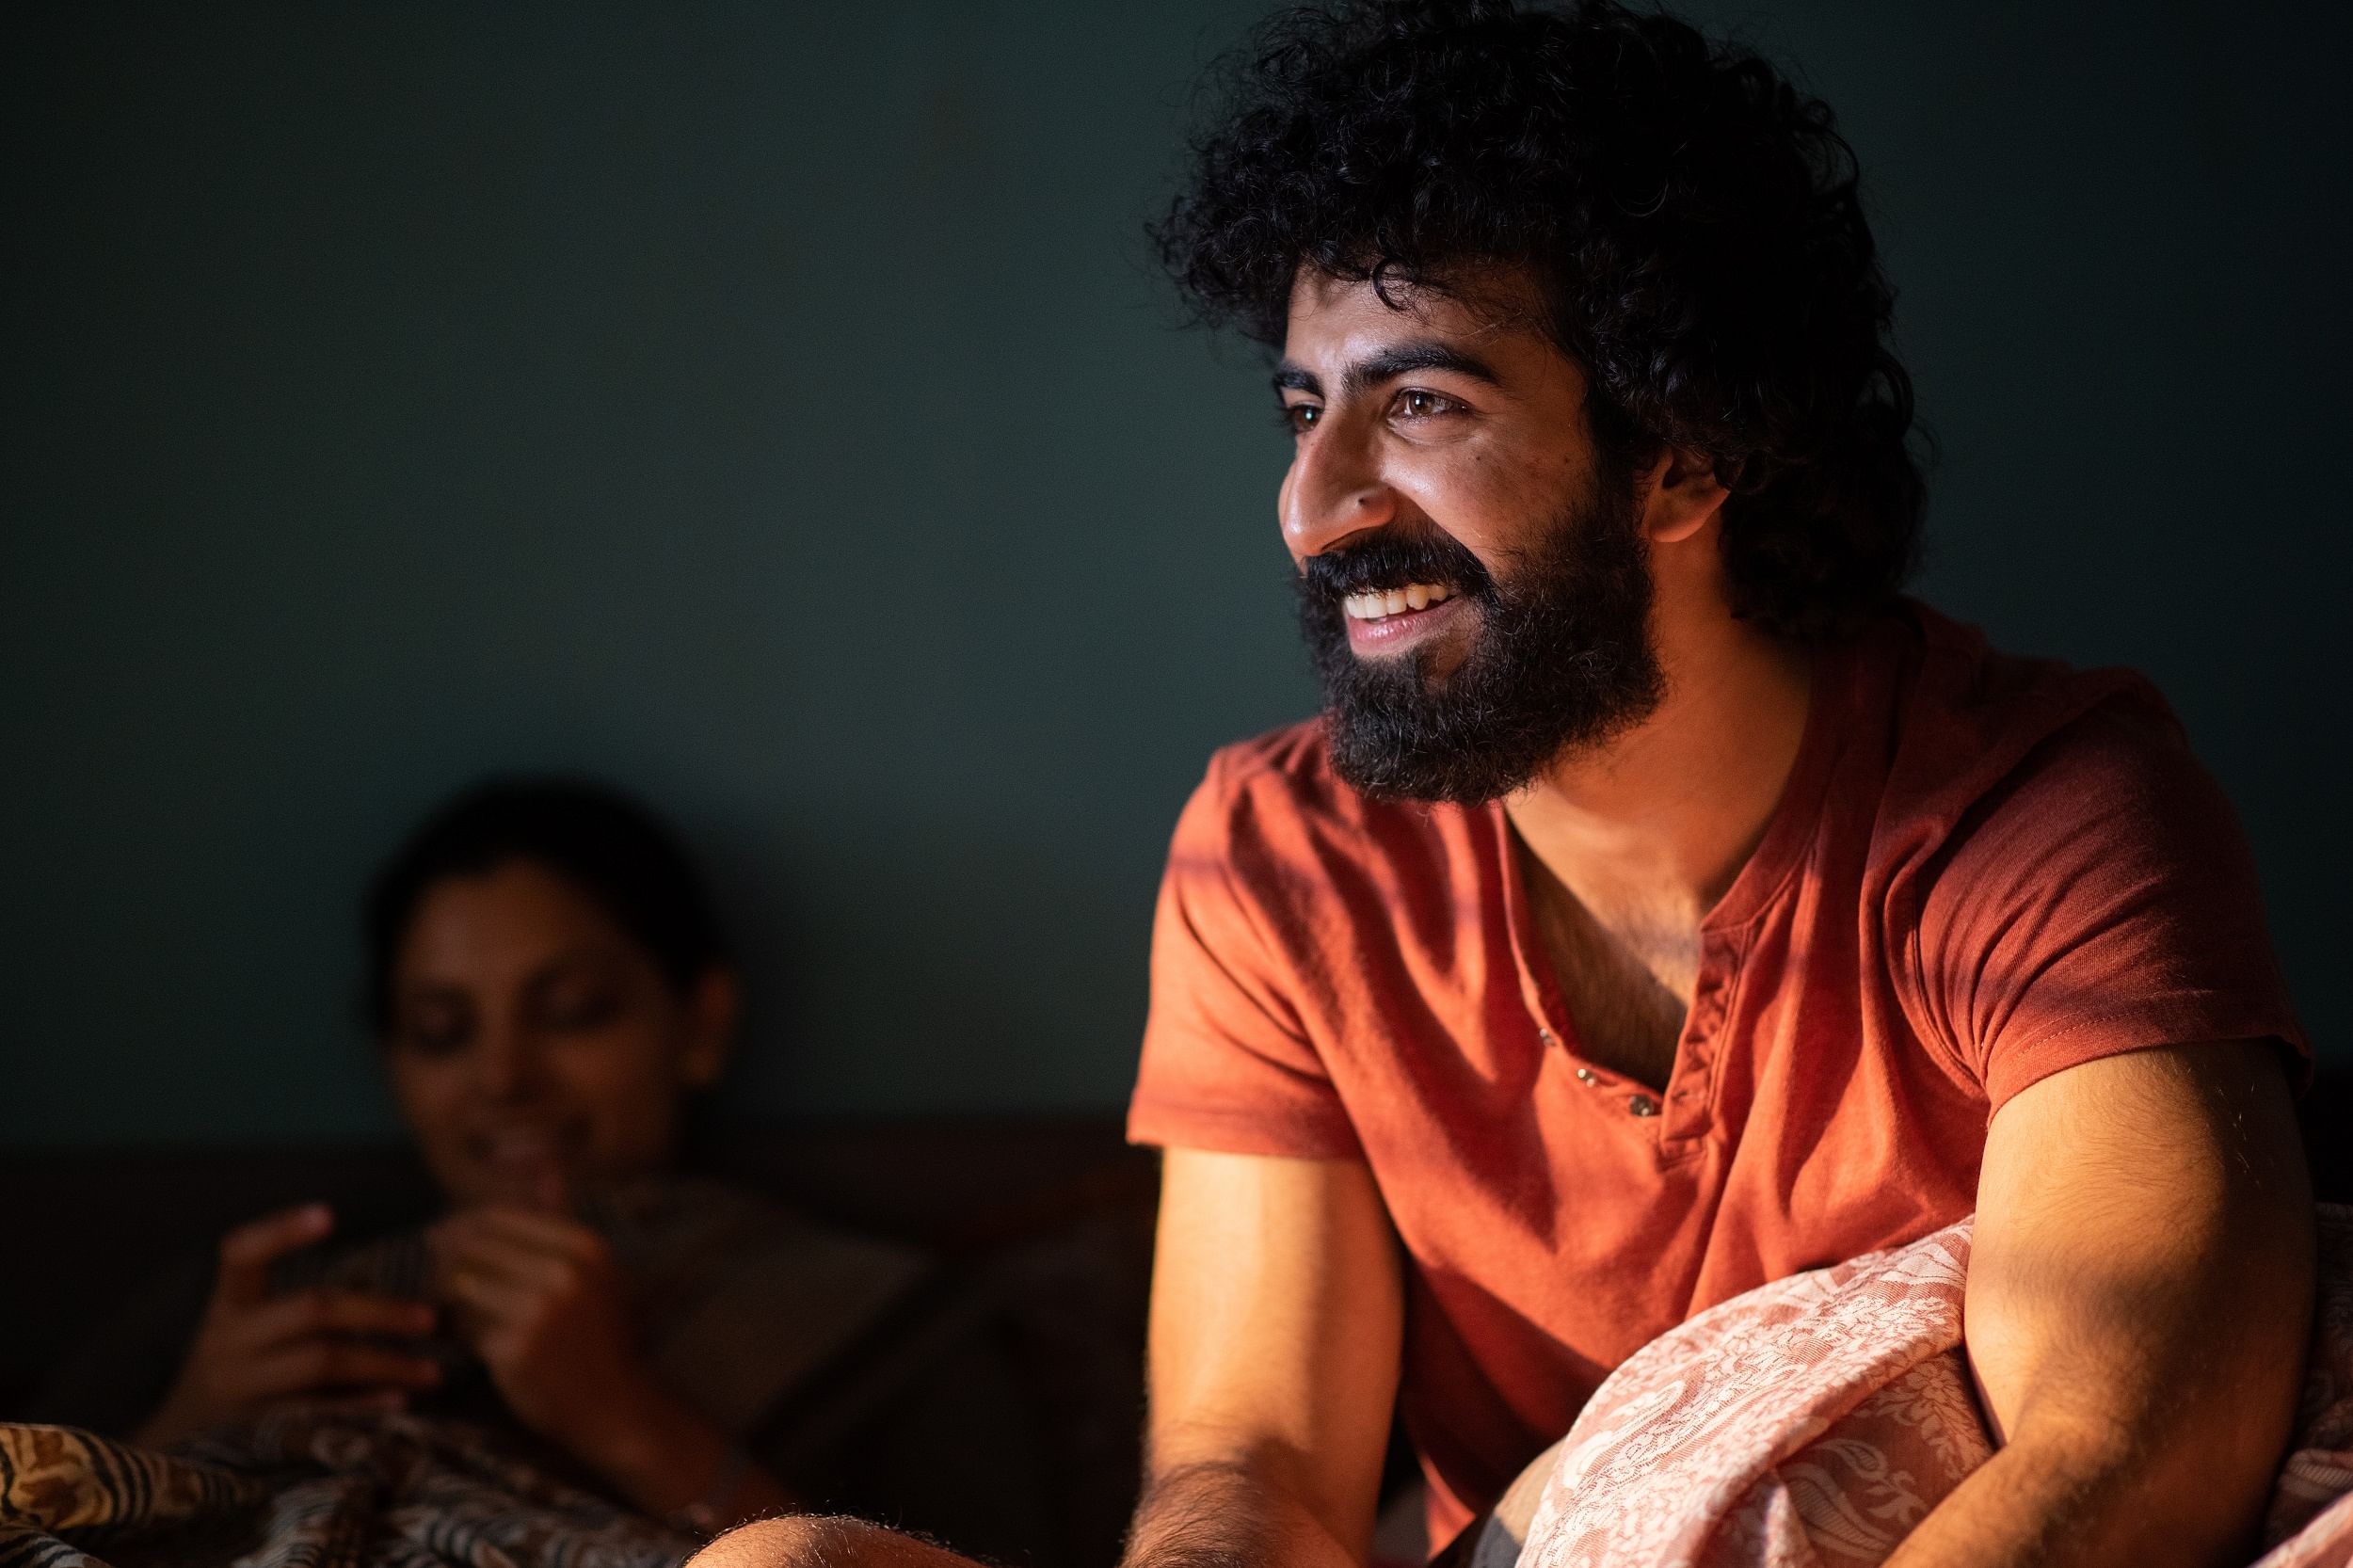 Roshan Mathew in 'Choked'. Photographer: Tejinder Singh Khamkha. Image courtesy: Netflix India